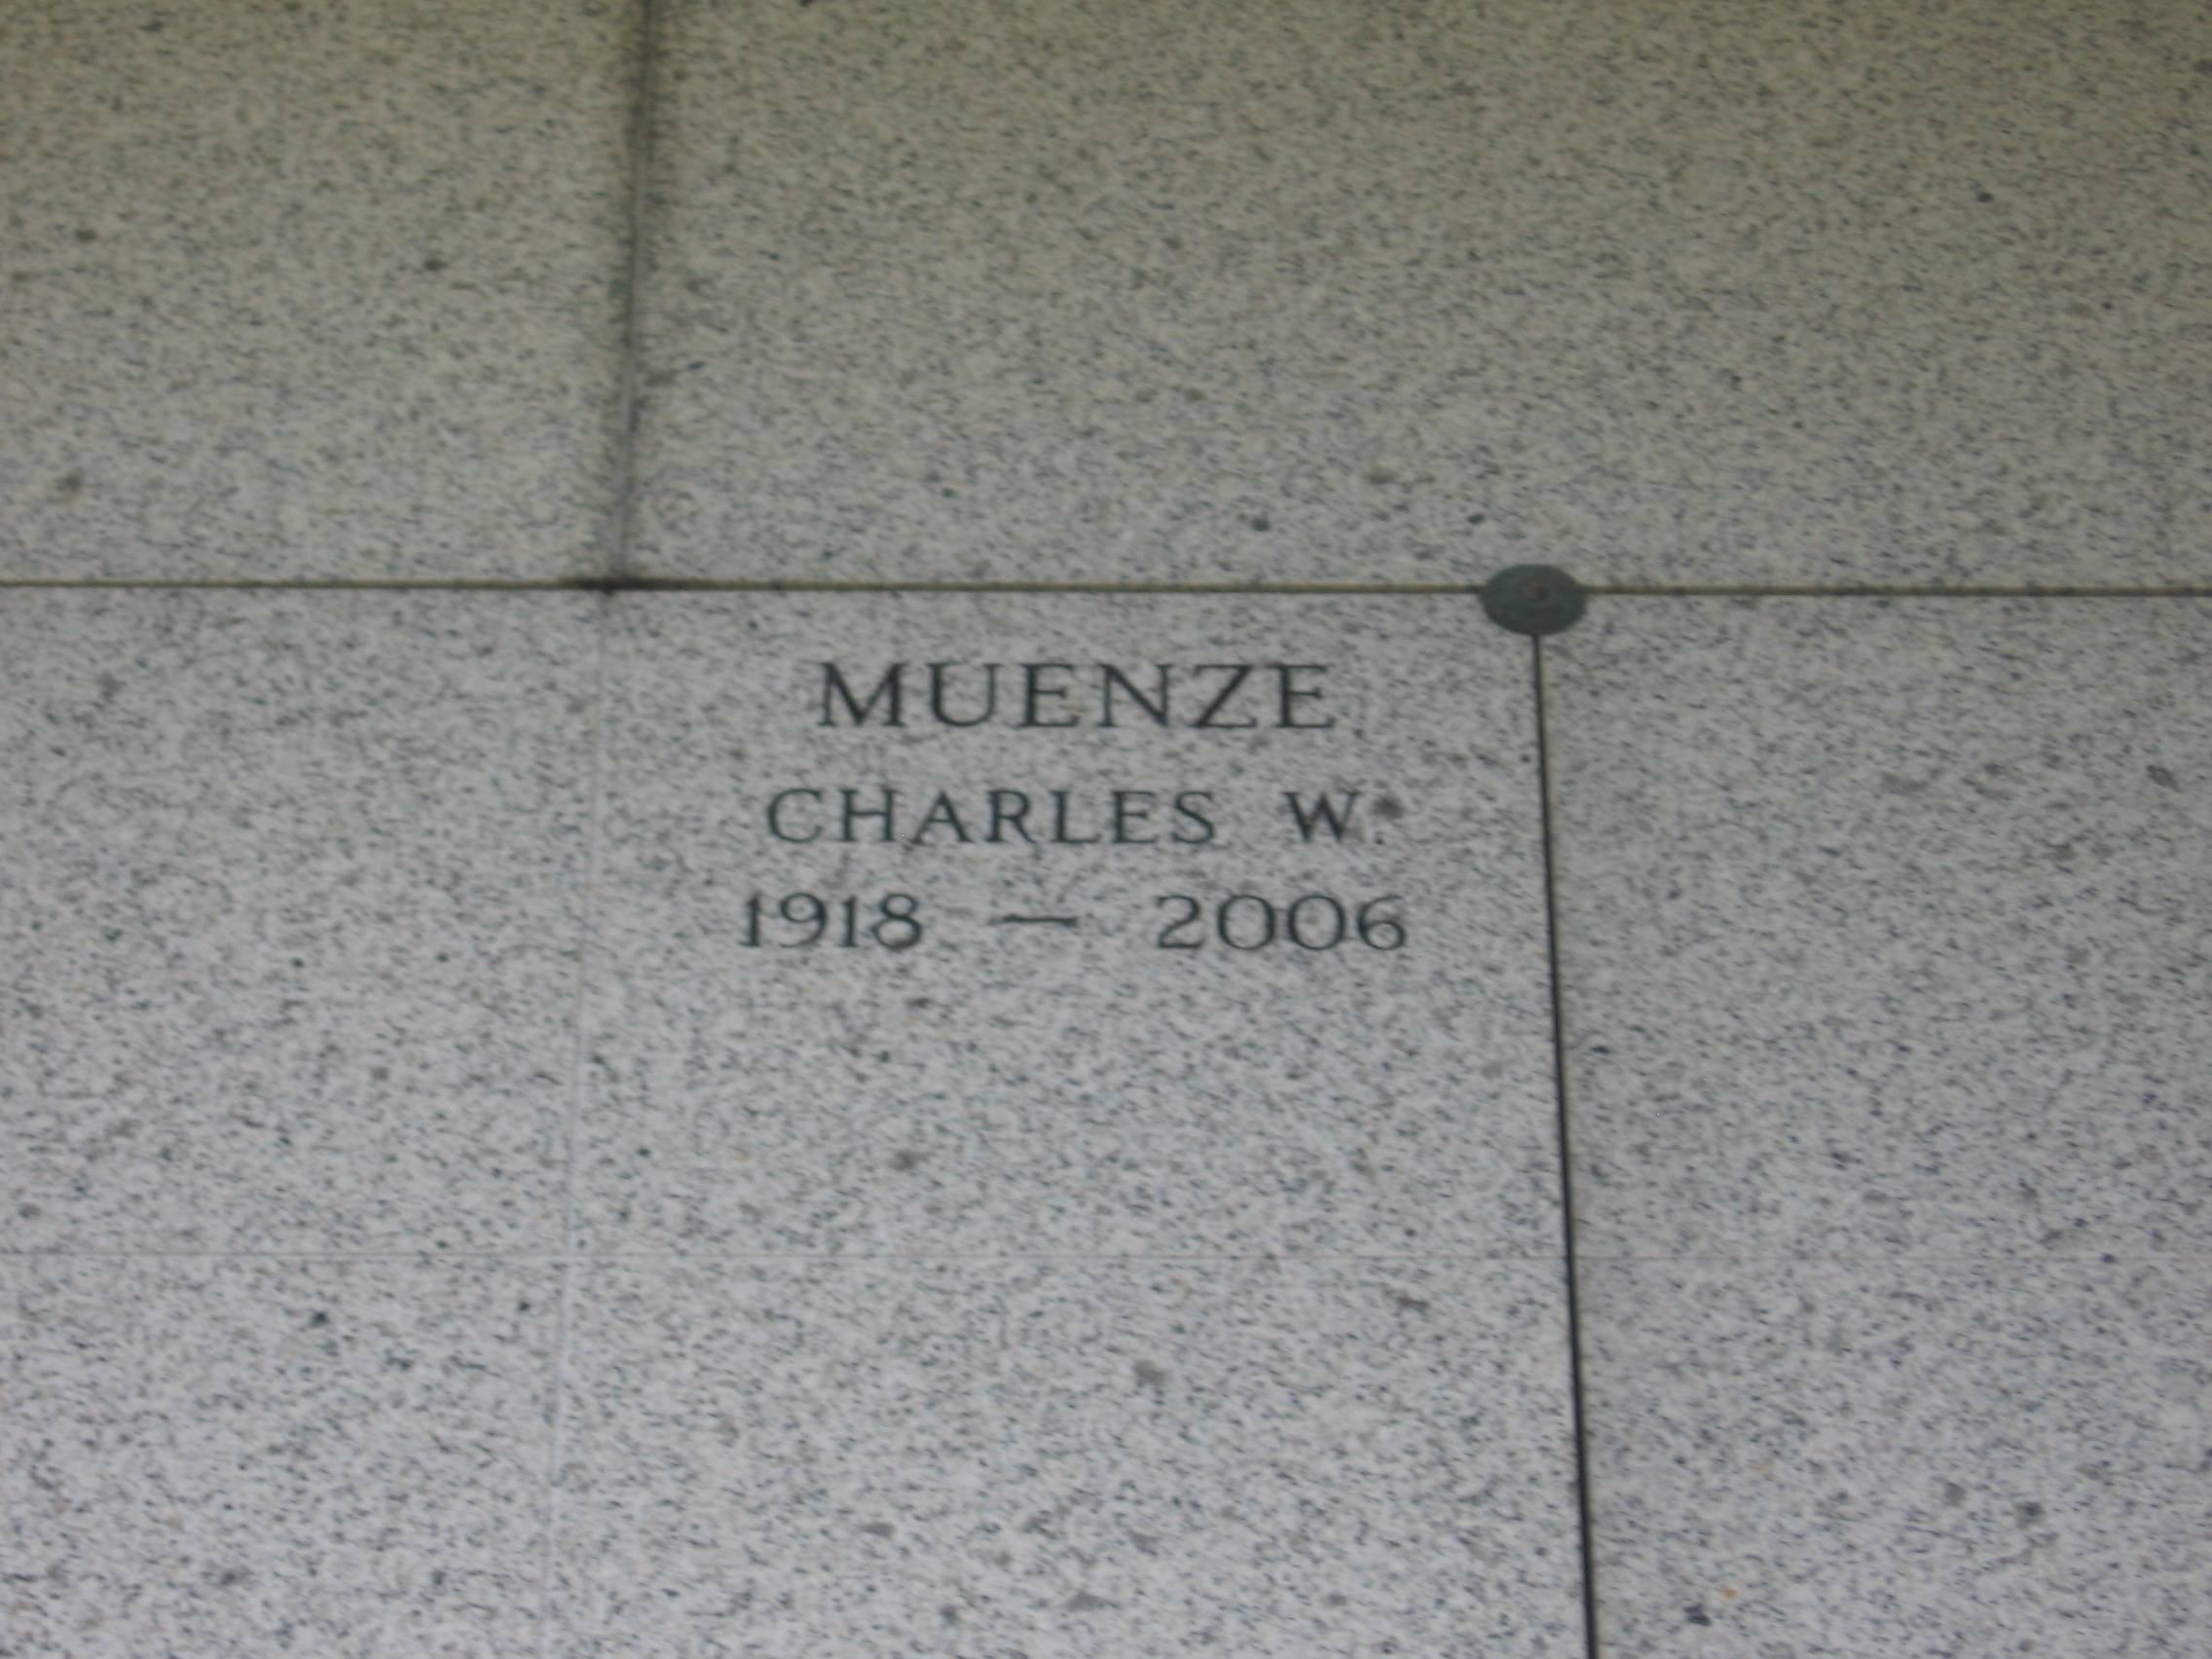 Charles W Muenze